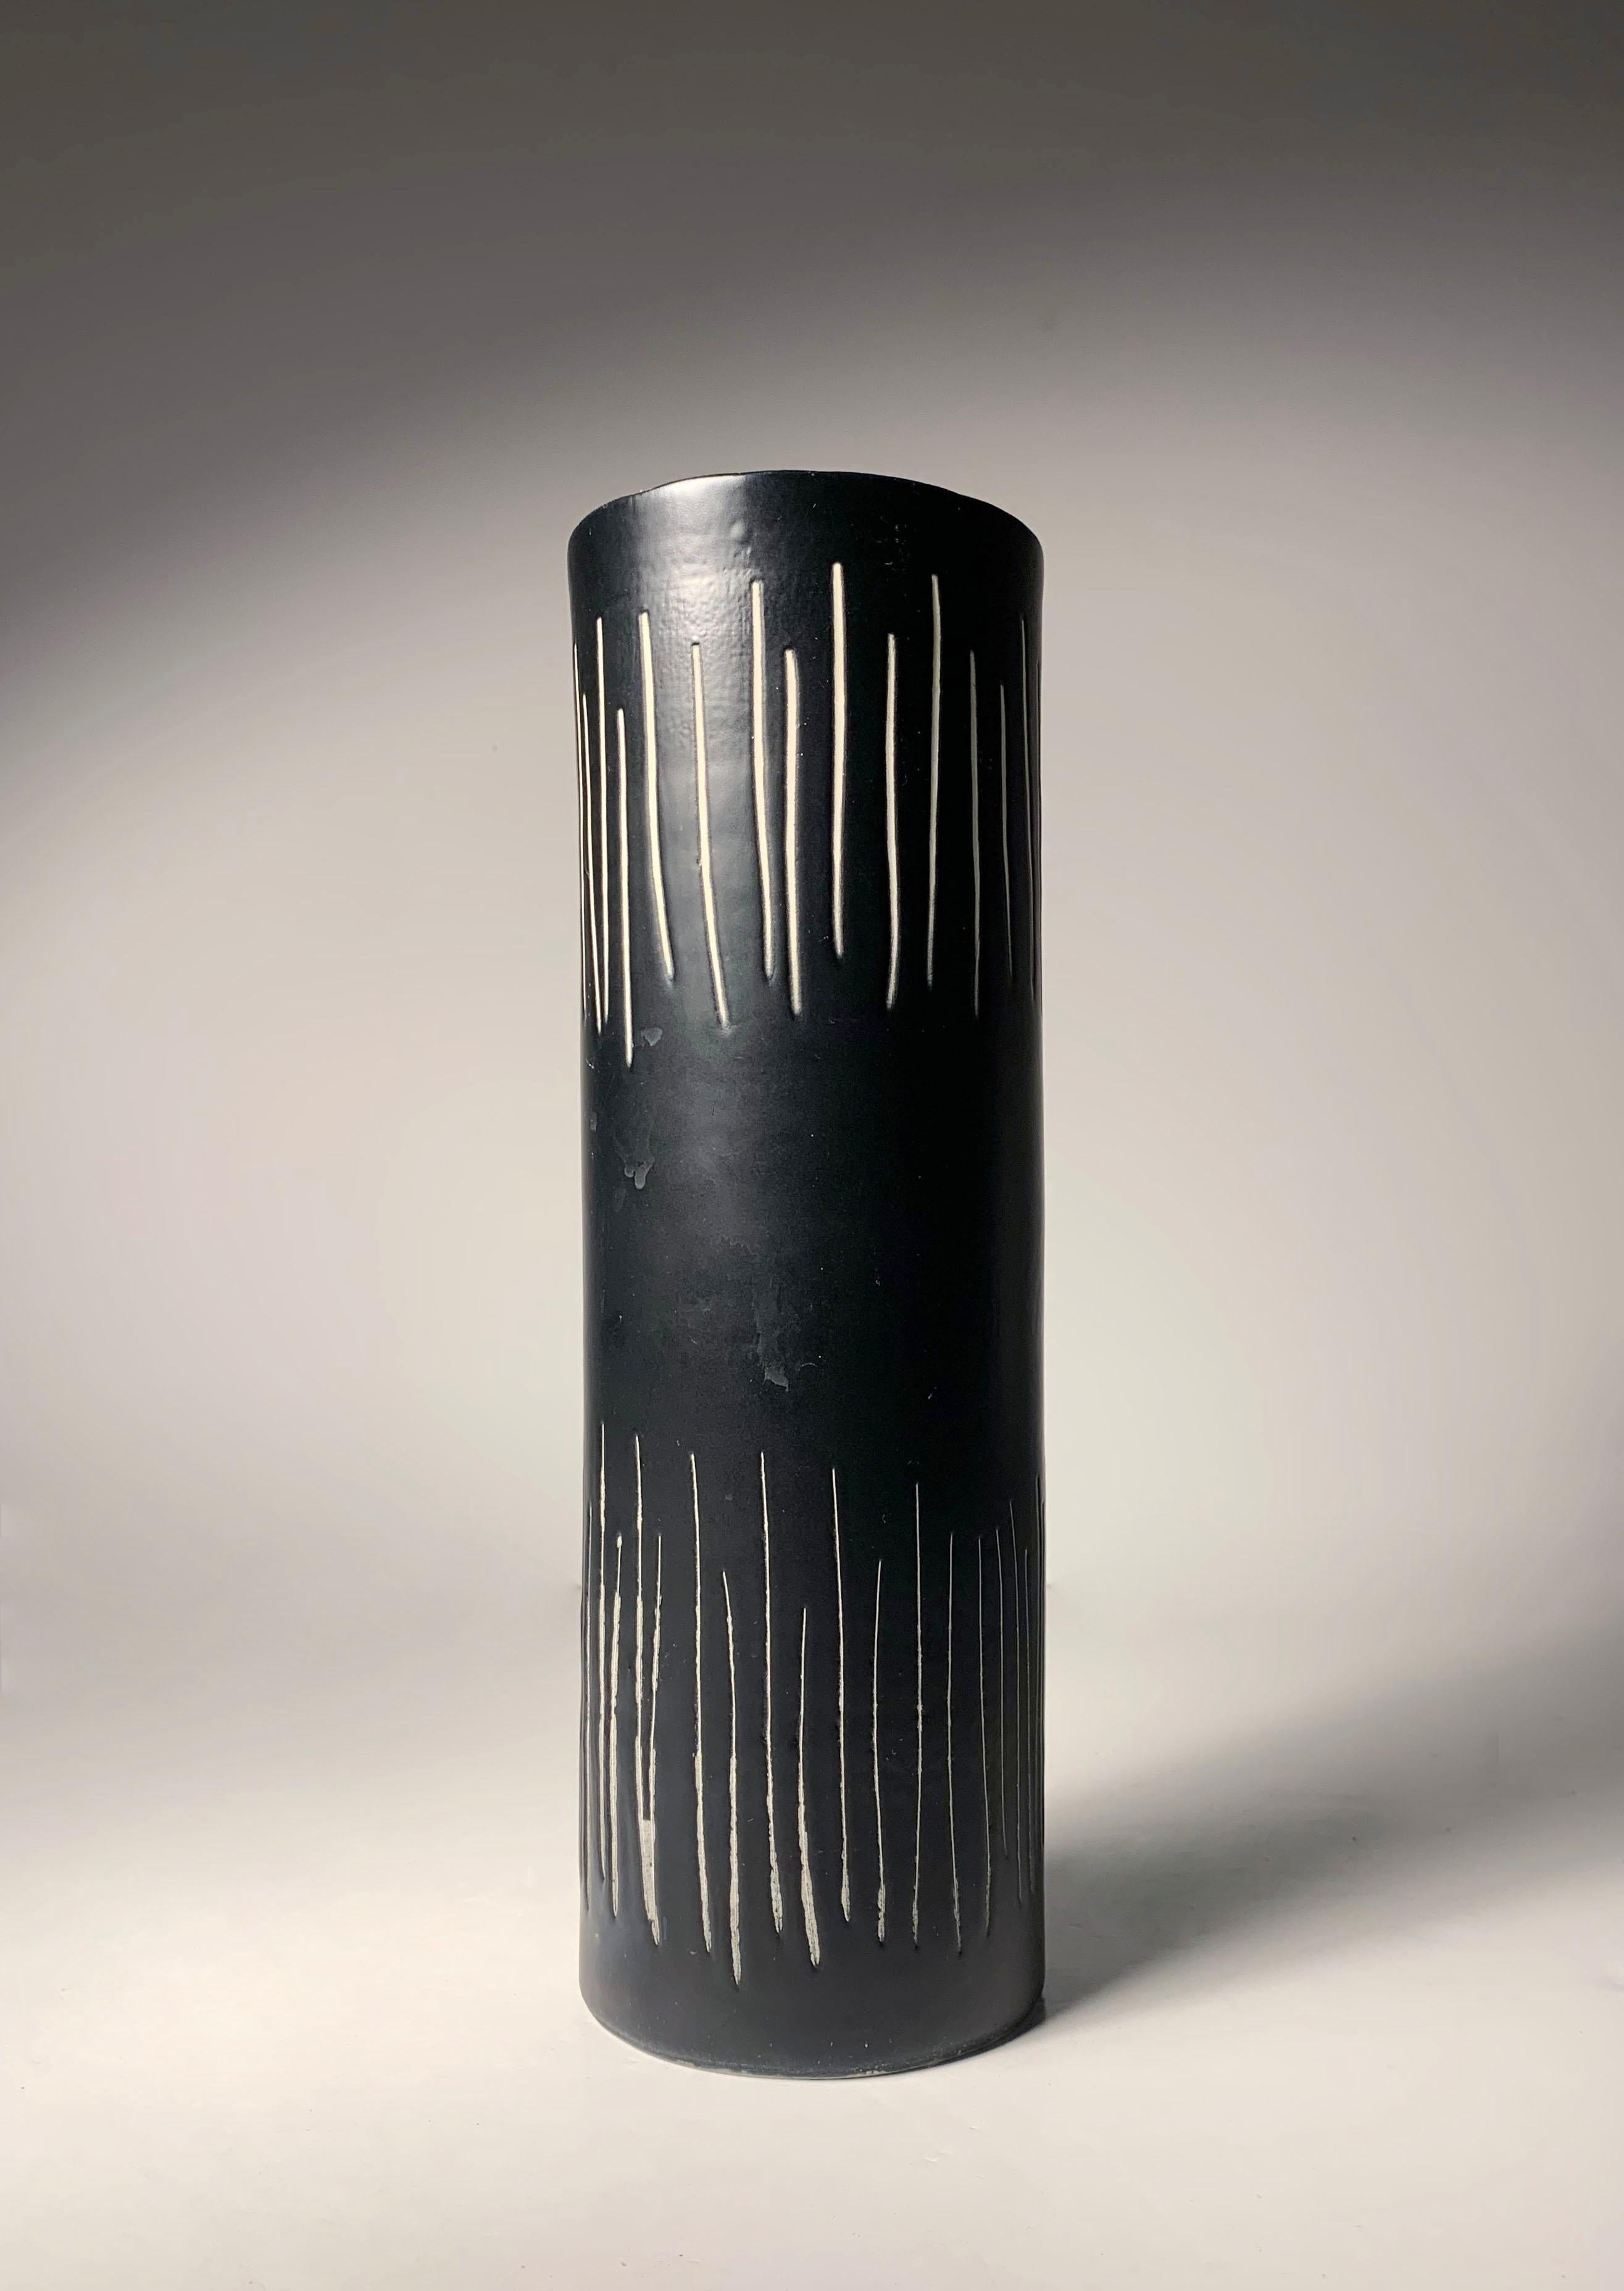 Vase aus italienischer Keramik von Alvino Bagni für Bitossi / Raymor. Wie im Detail der Innenseite gezeigt, handelt es sich um handgedrehte Vasen.